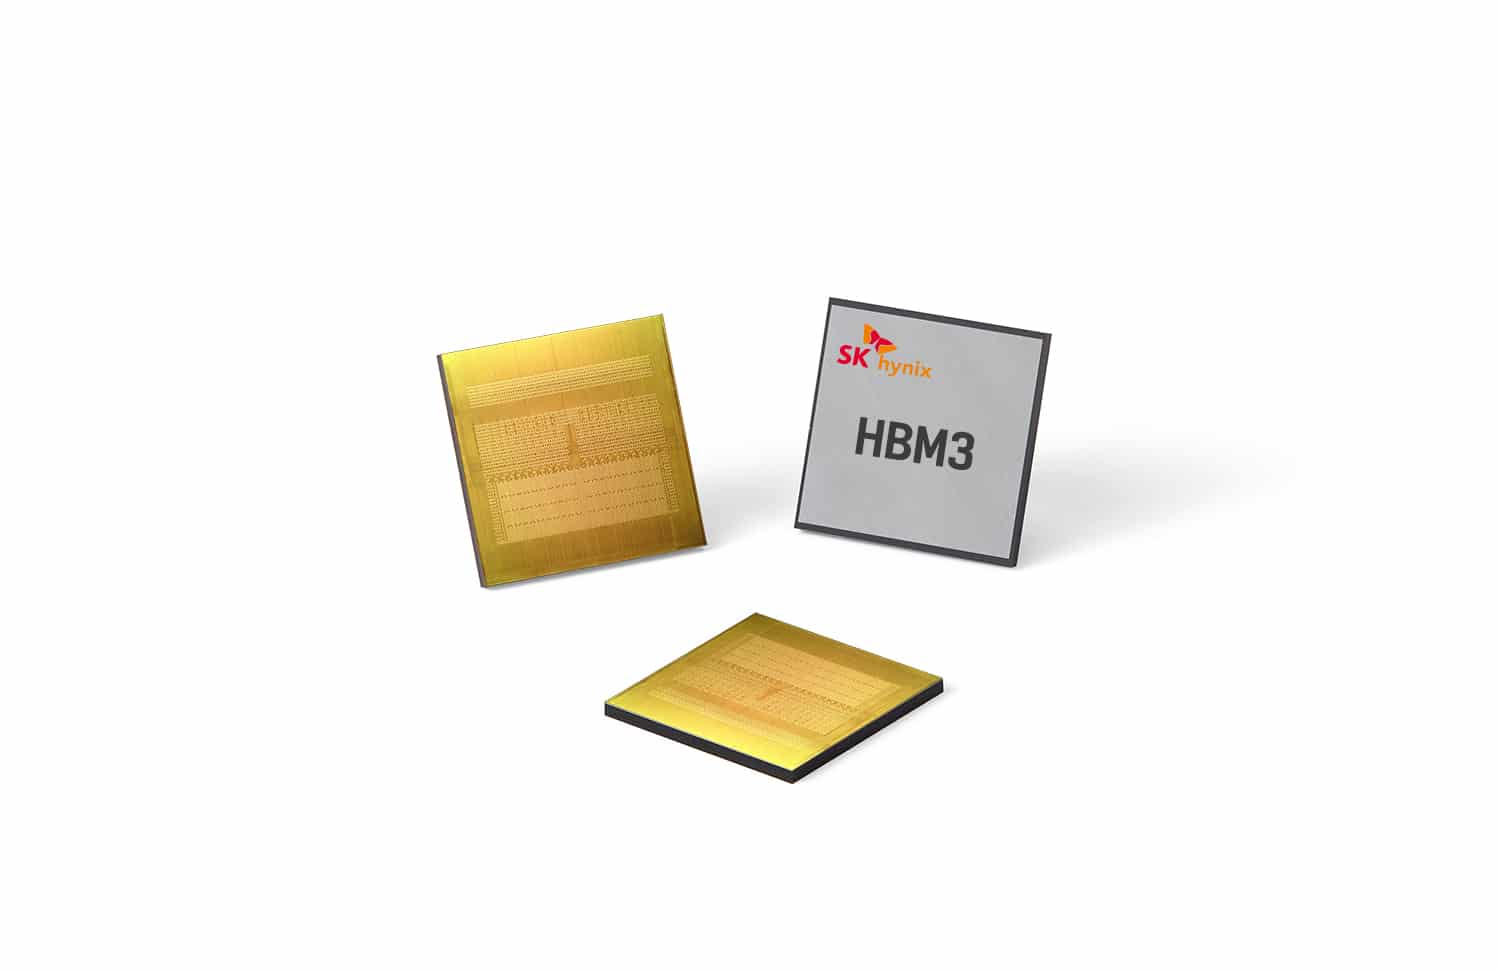 TSMCとSK hynixがAI向けメモリ開発で提携、次世代NVIDIAおよびAMD GPU向けHBM4開発を促進